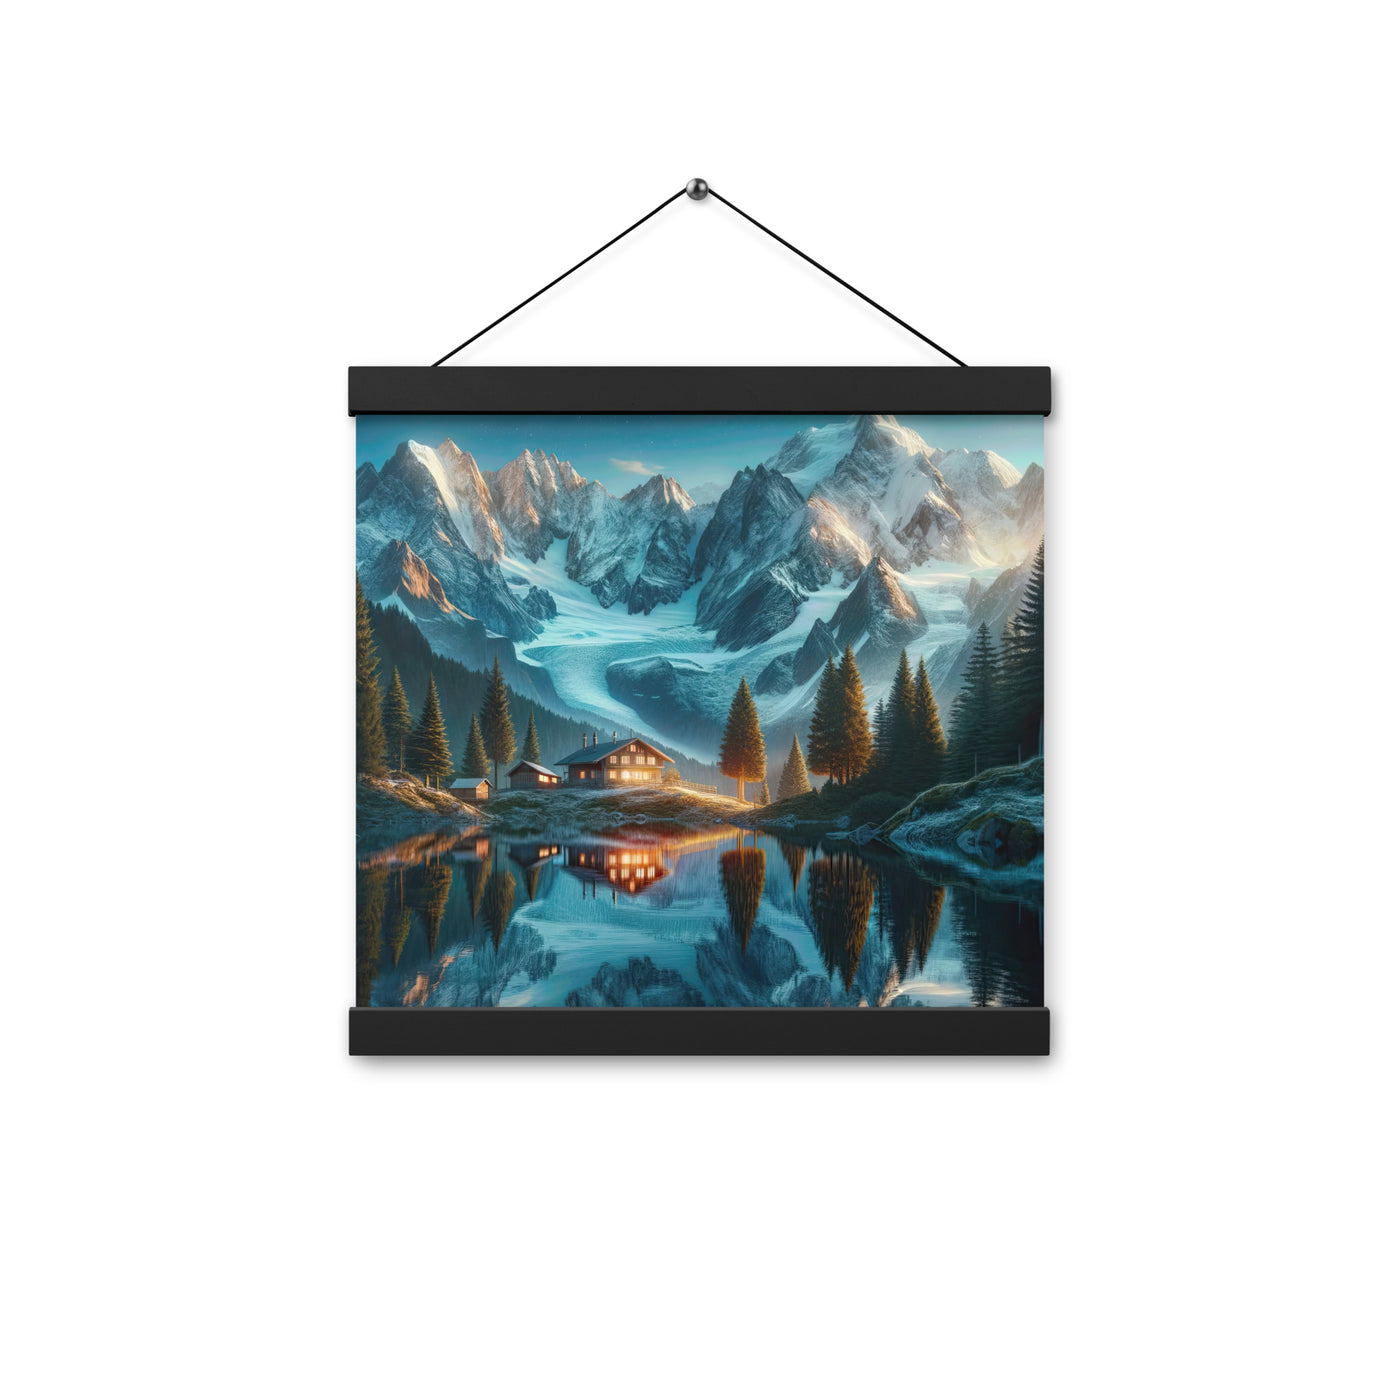 Stille Alpenmajestätik: Digitale Kunst mit Schnee und Bergsee-Spiegelung - Premium Poster mit Aufhängung berge xxx yyy zzz 30.5 x 30.5 cm